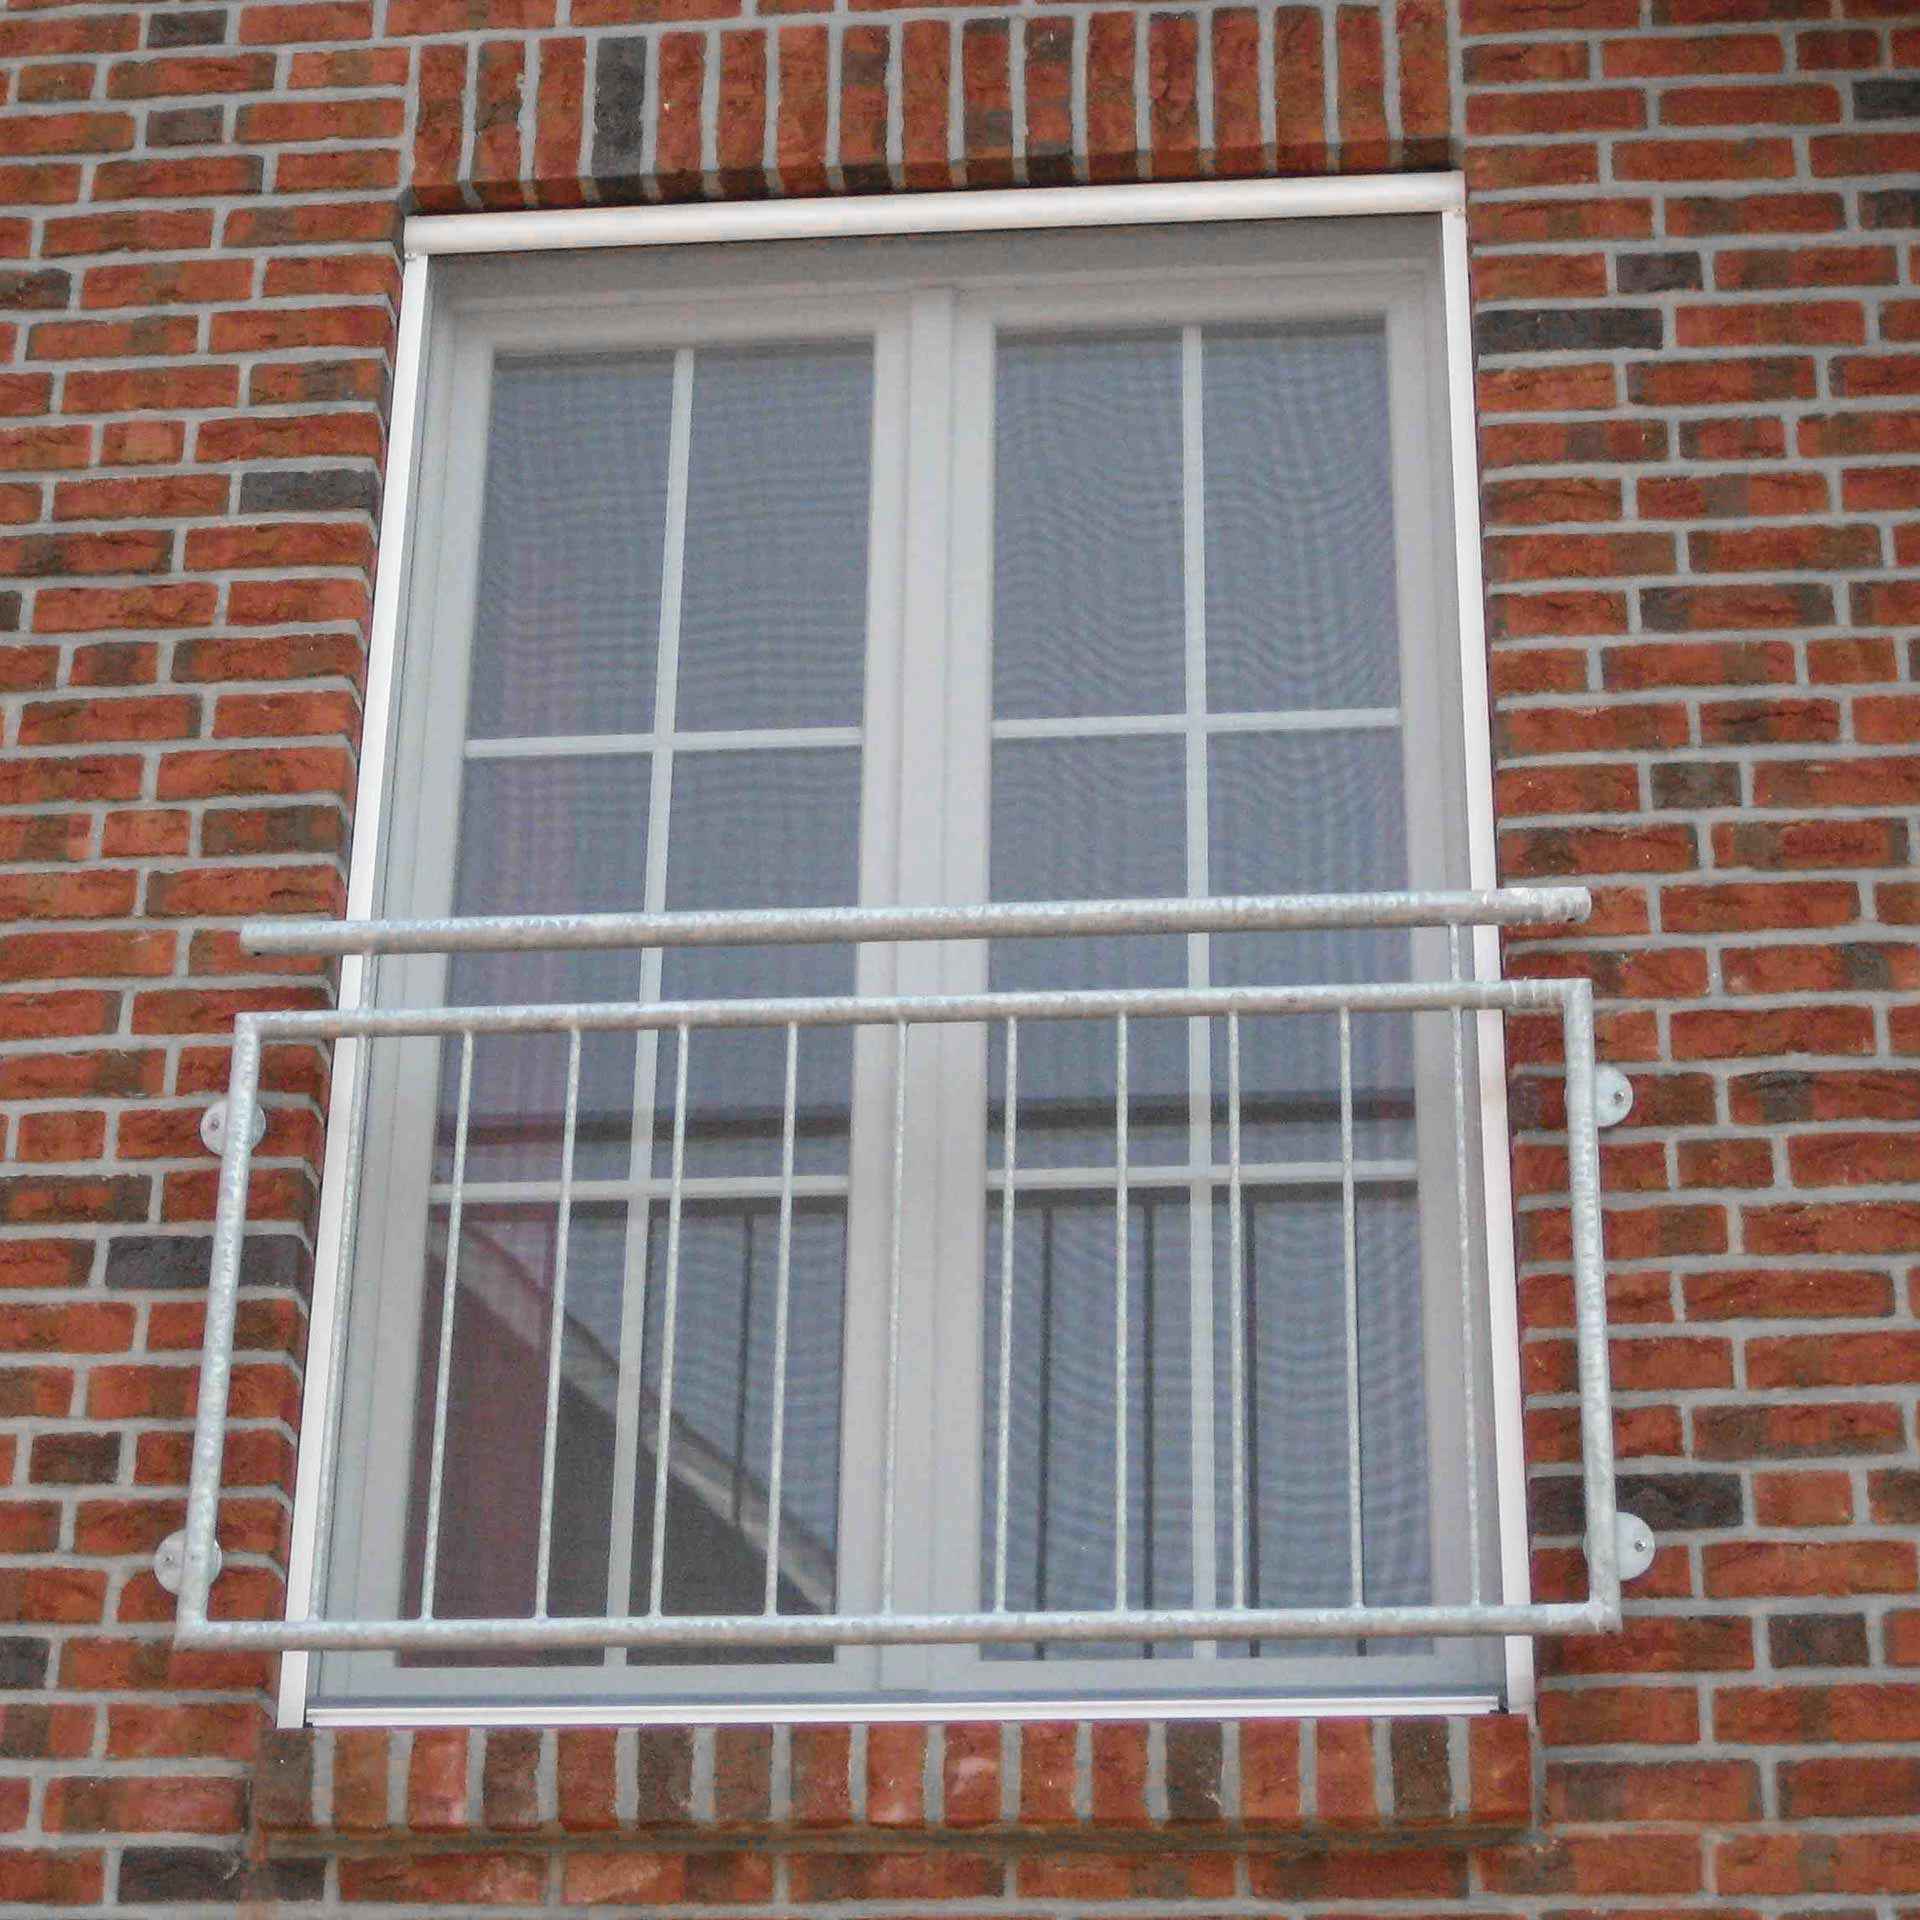 8x Fliegengitter Insektenschutz Türvorhang Fenstergitter